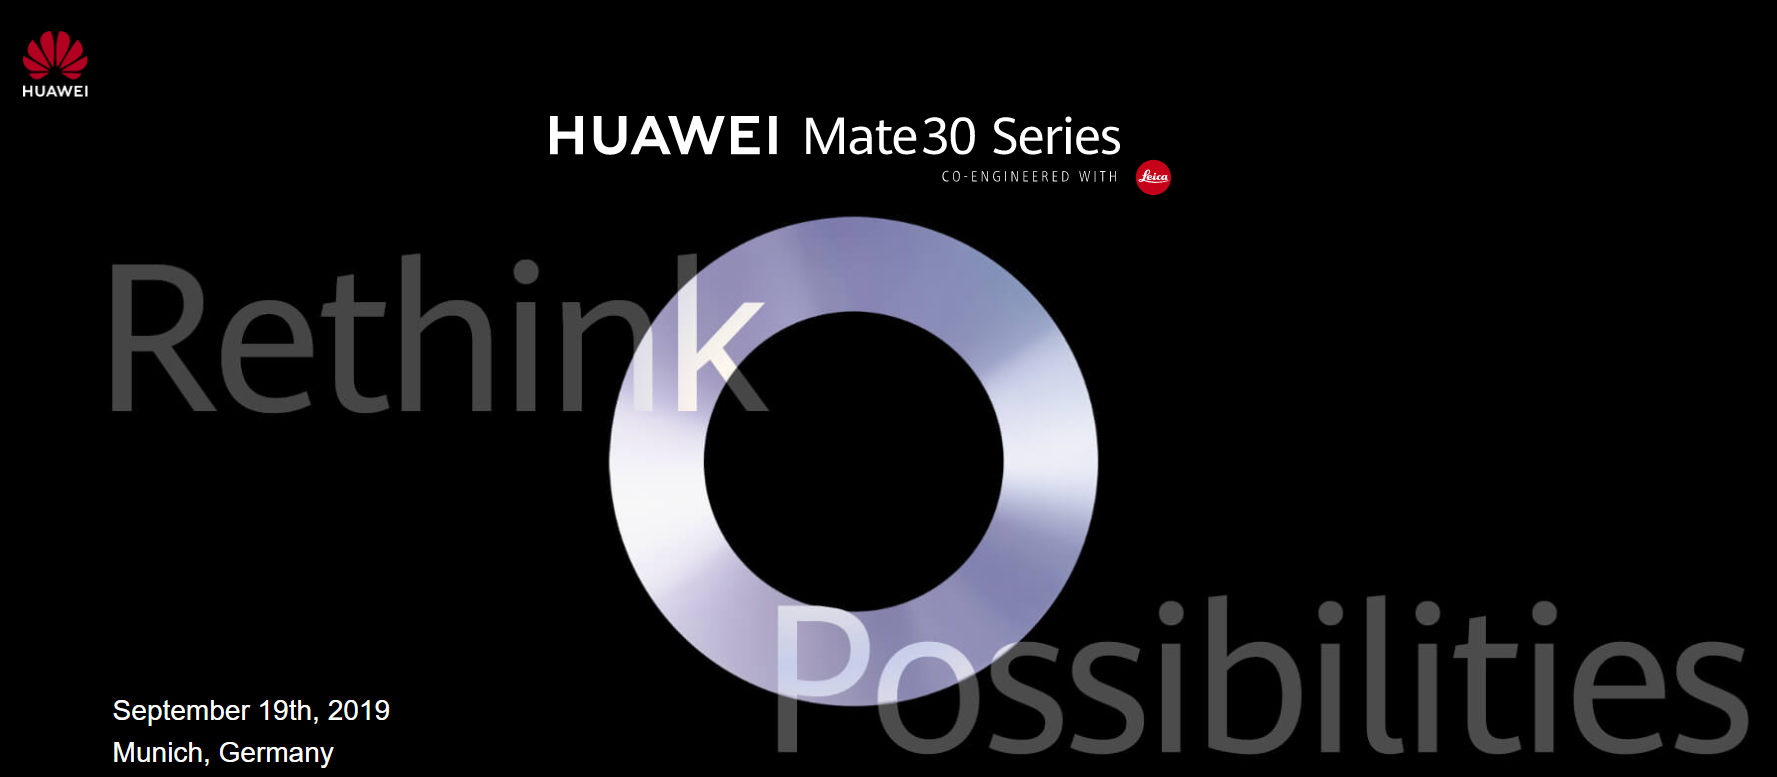 【快訊報報】華為 HUAWEI Mate30 系列新機 將在 9/19 德國慕尼黑發表 - mate20 - 科技狗 3C DOG